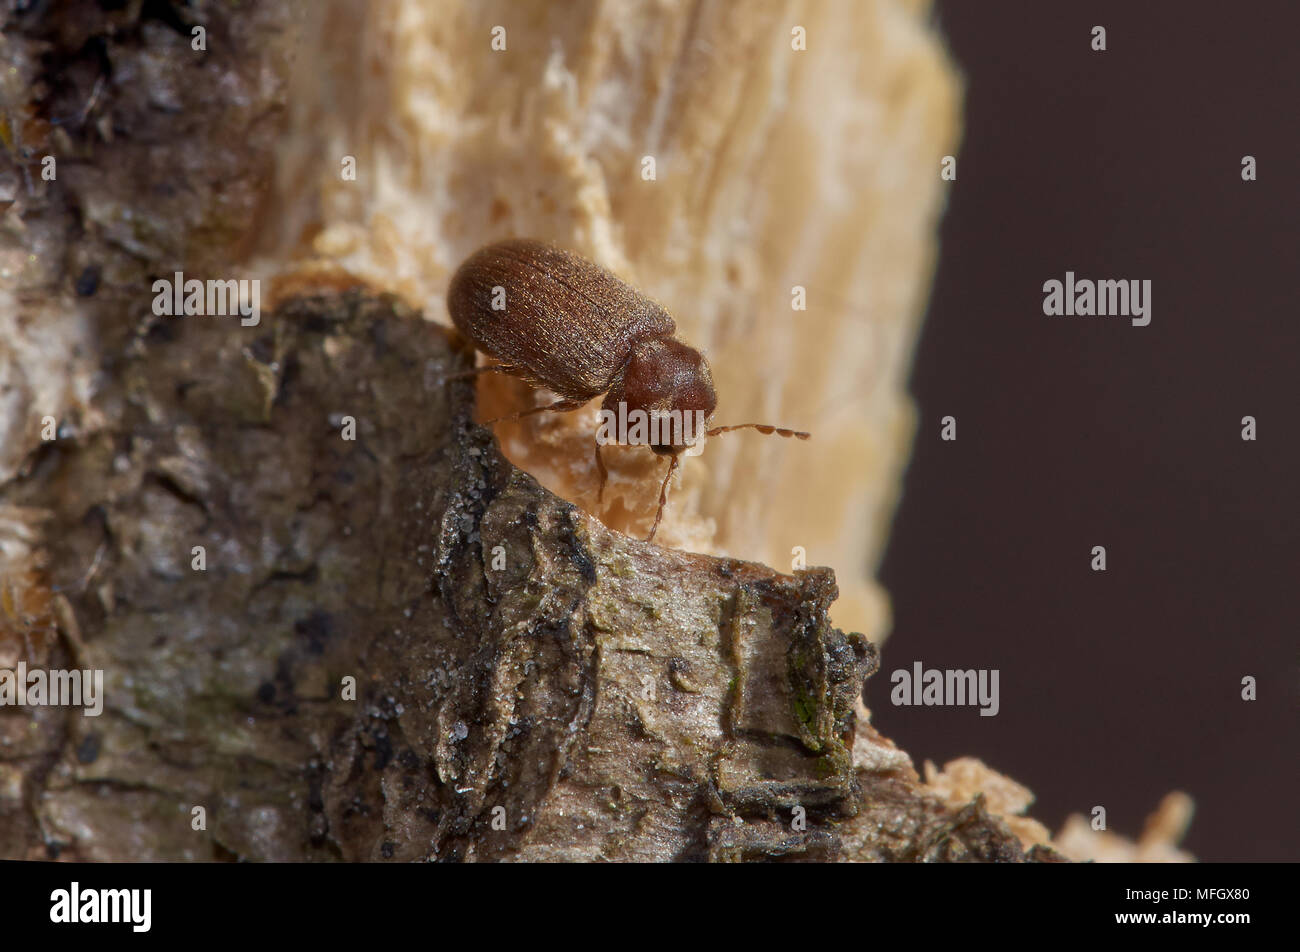 Woodworm Or Common Furniture Beetle Anobium Punctatum Sussex Uk